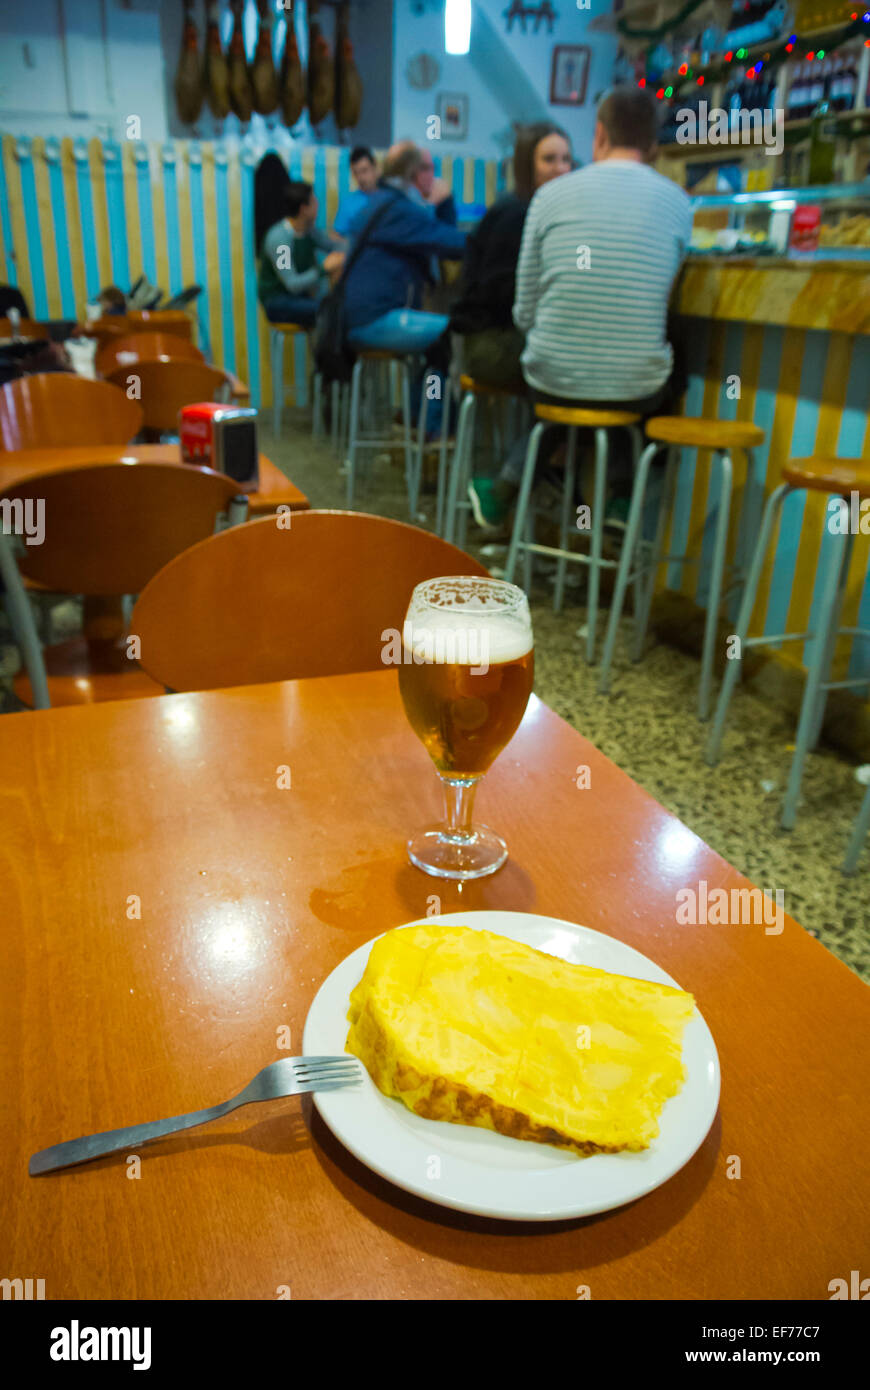 Tortilla and a beer, Bar Celta Pulperia, famous tapas bar, Carrer de la Merce, Barri Gotic, Barcelona, Spain Stock Photo